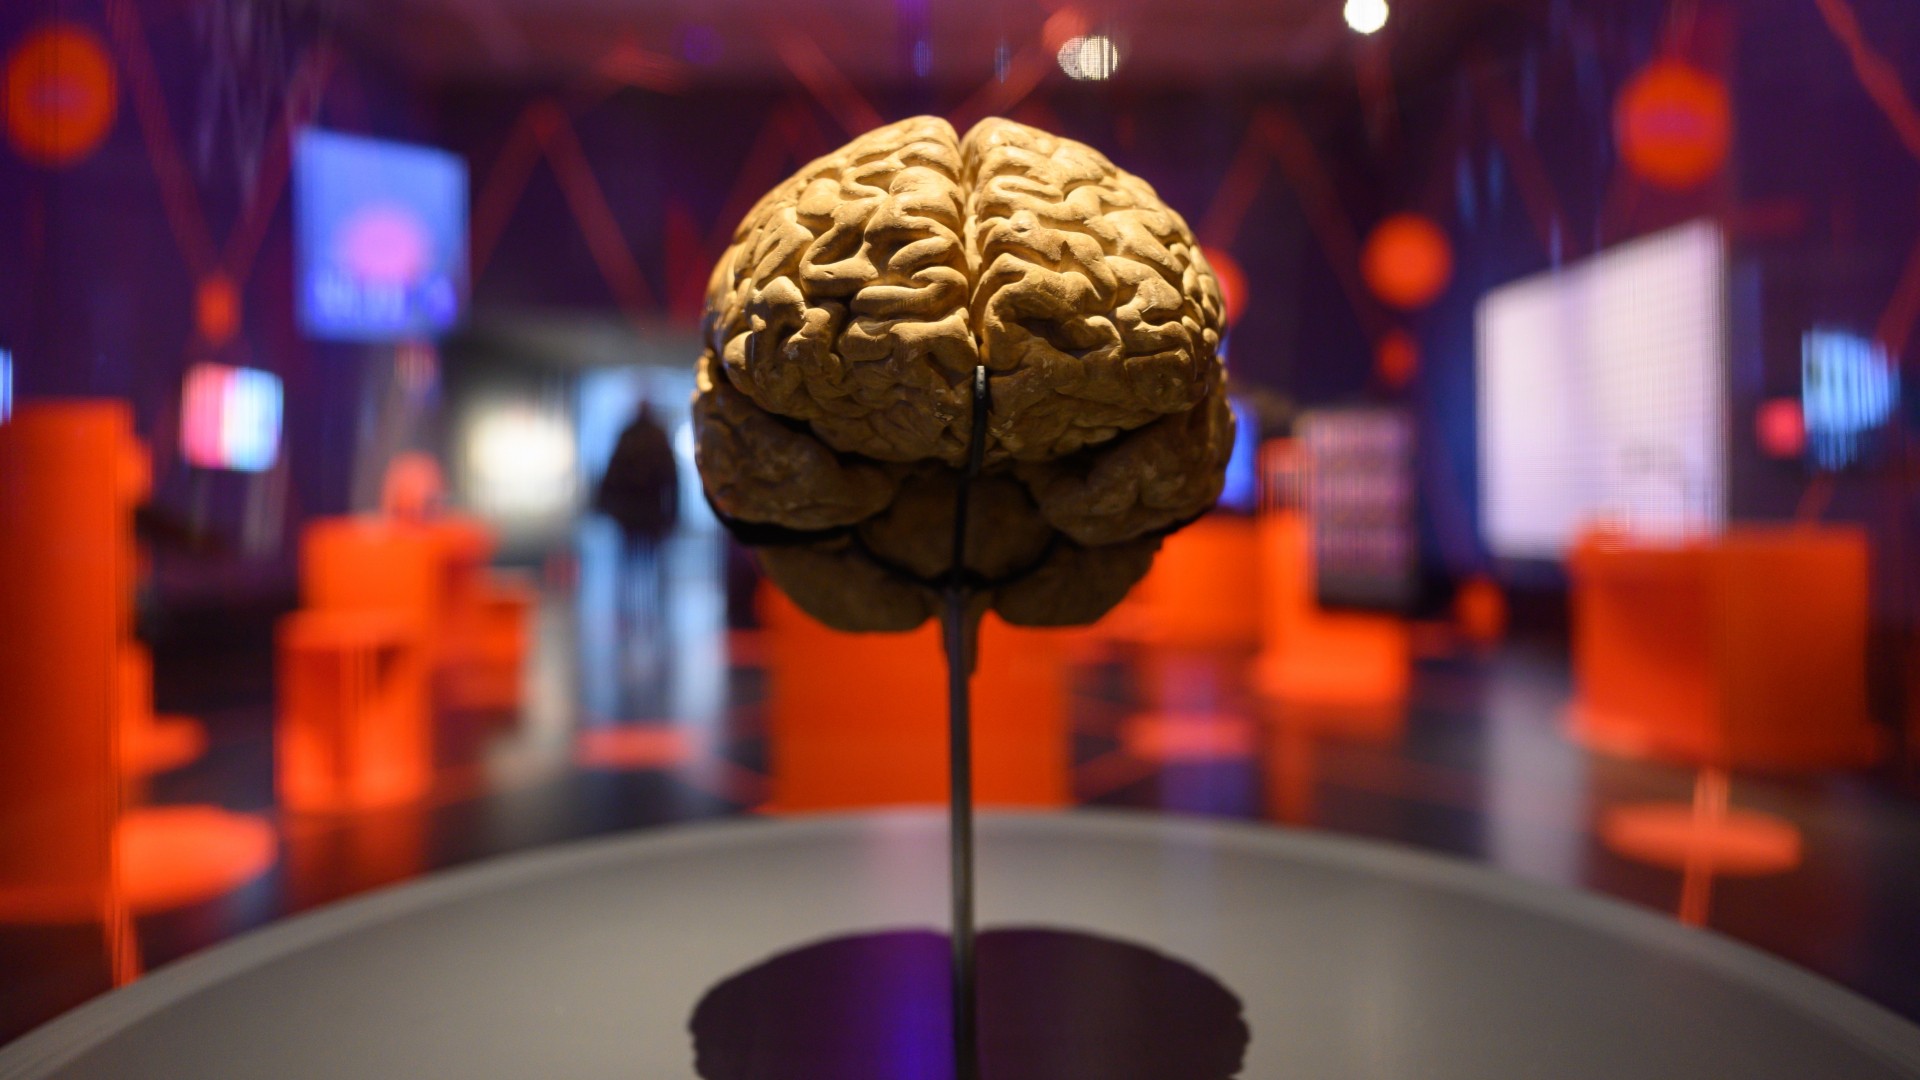 Modell eines menschlichen Gehirns | dpa